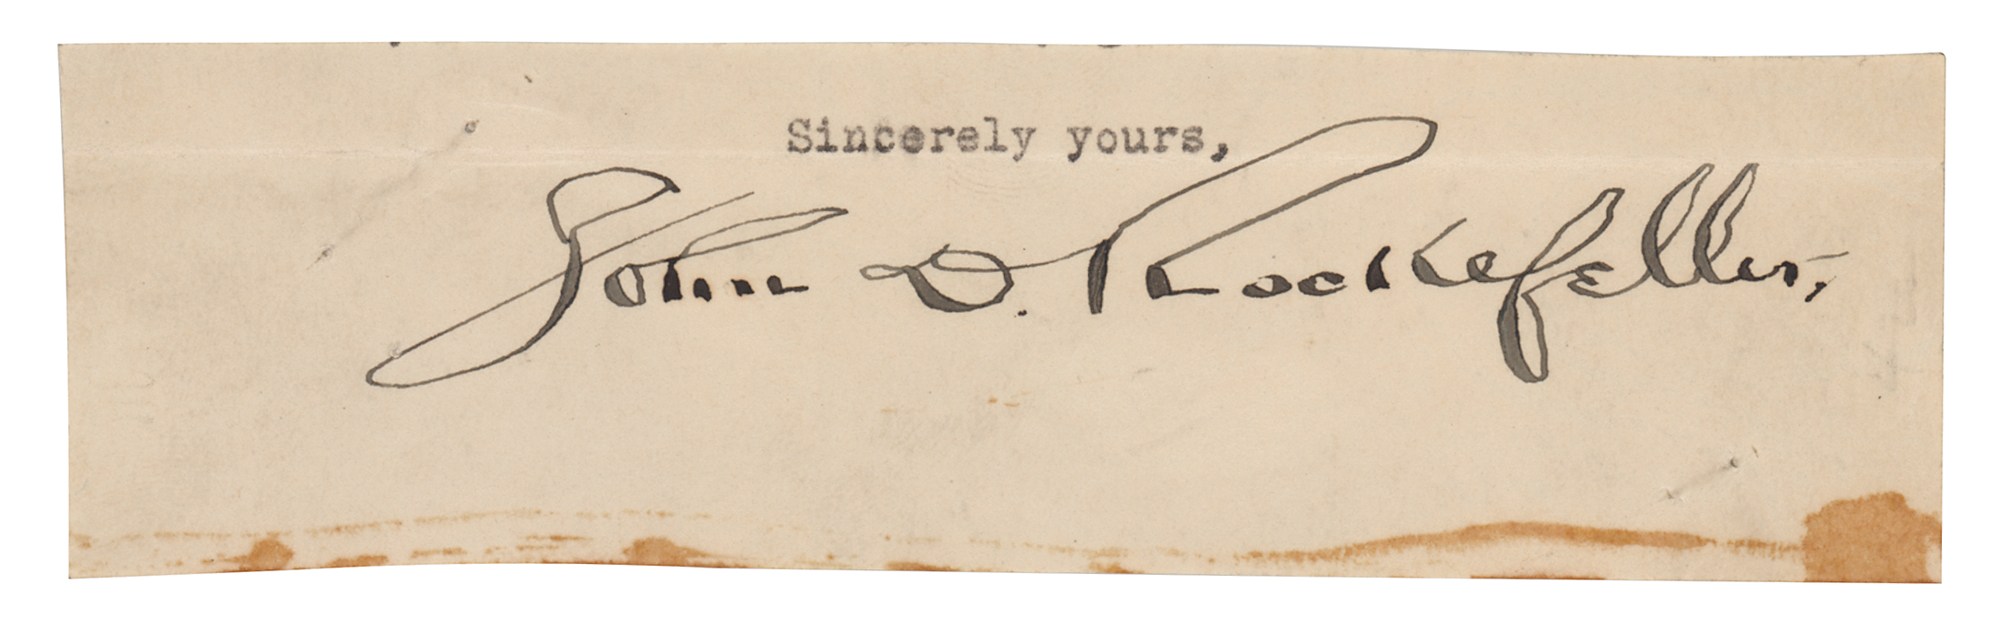 Lot #291 John D. Rockefeller Signature